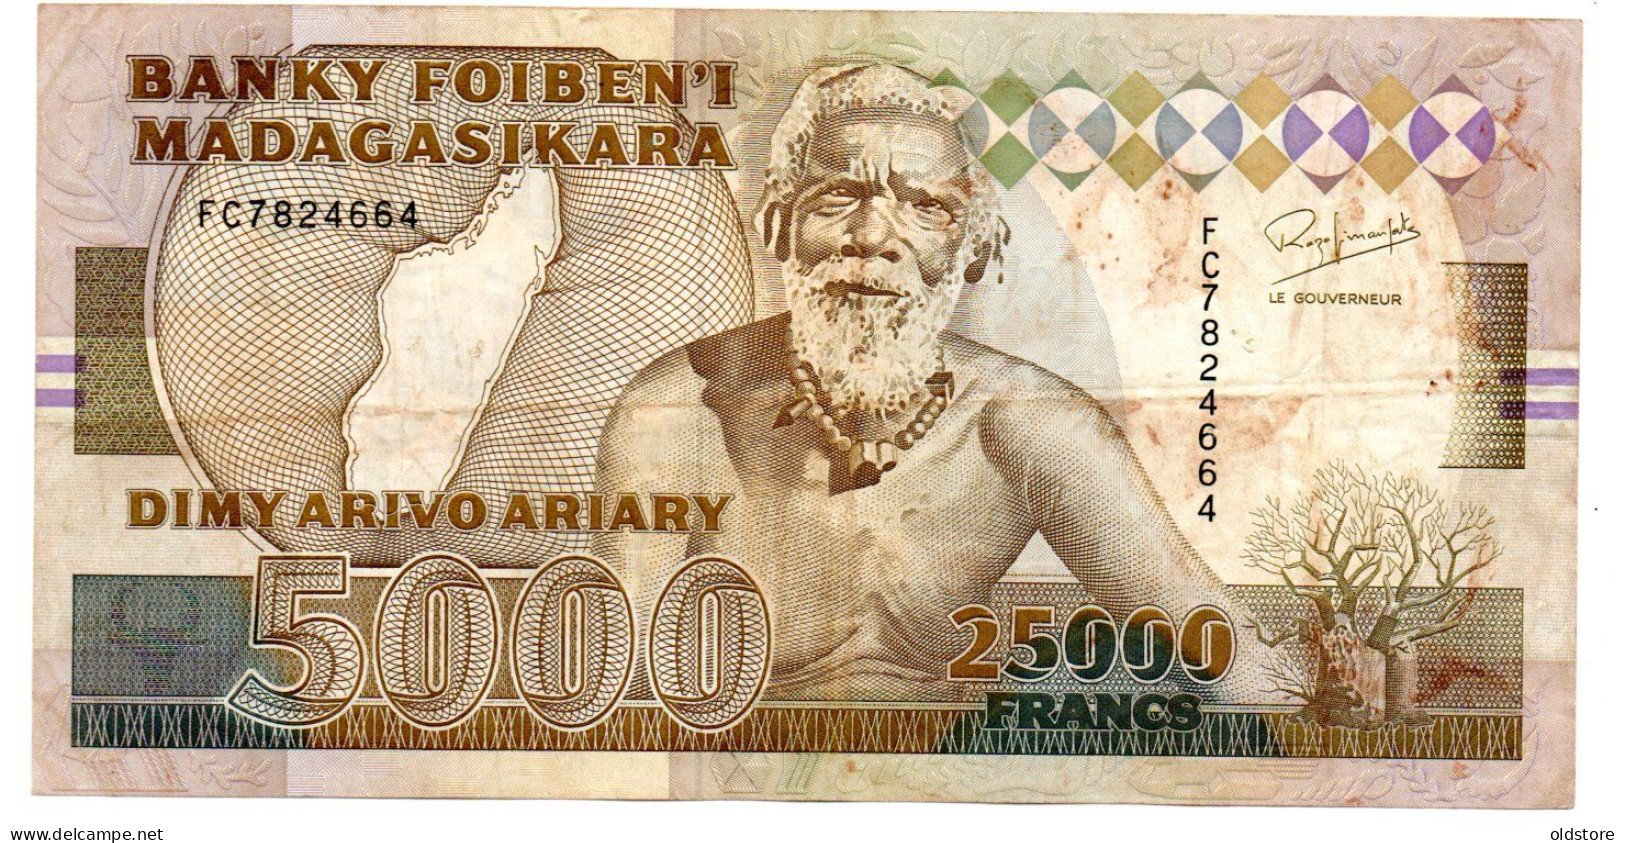 MADAGASCAR Banknotes - 25000 FRANCS - 5000 Ariary 1993 - LARGE BANKNOTES #1 - Madagascar